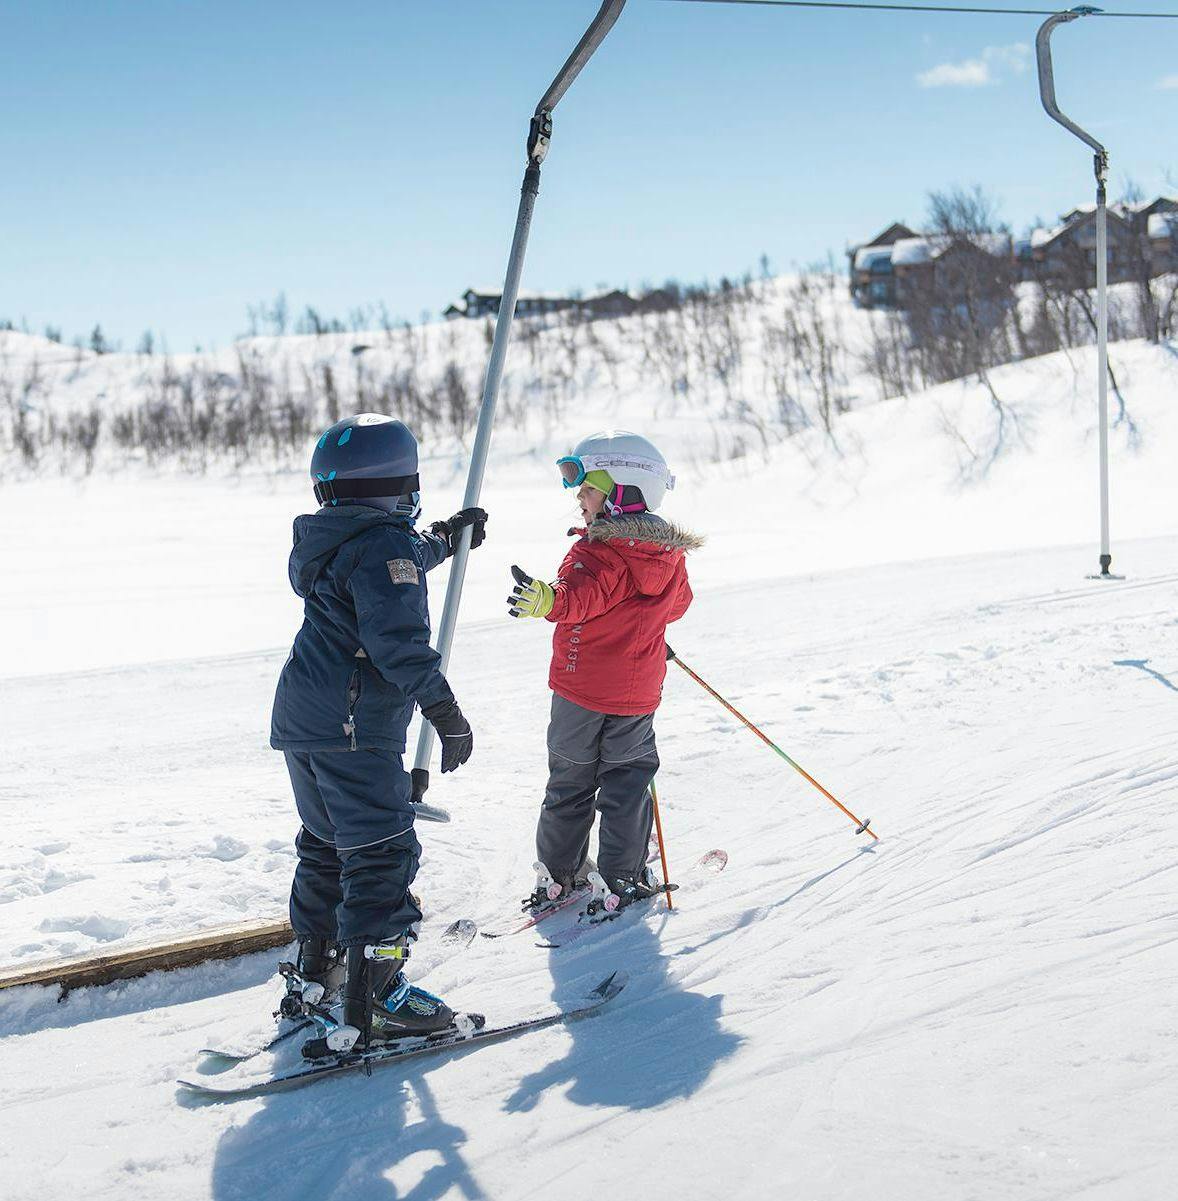 Kids with slalom skis